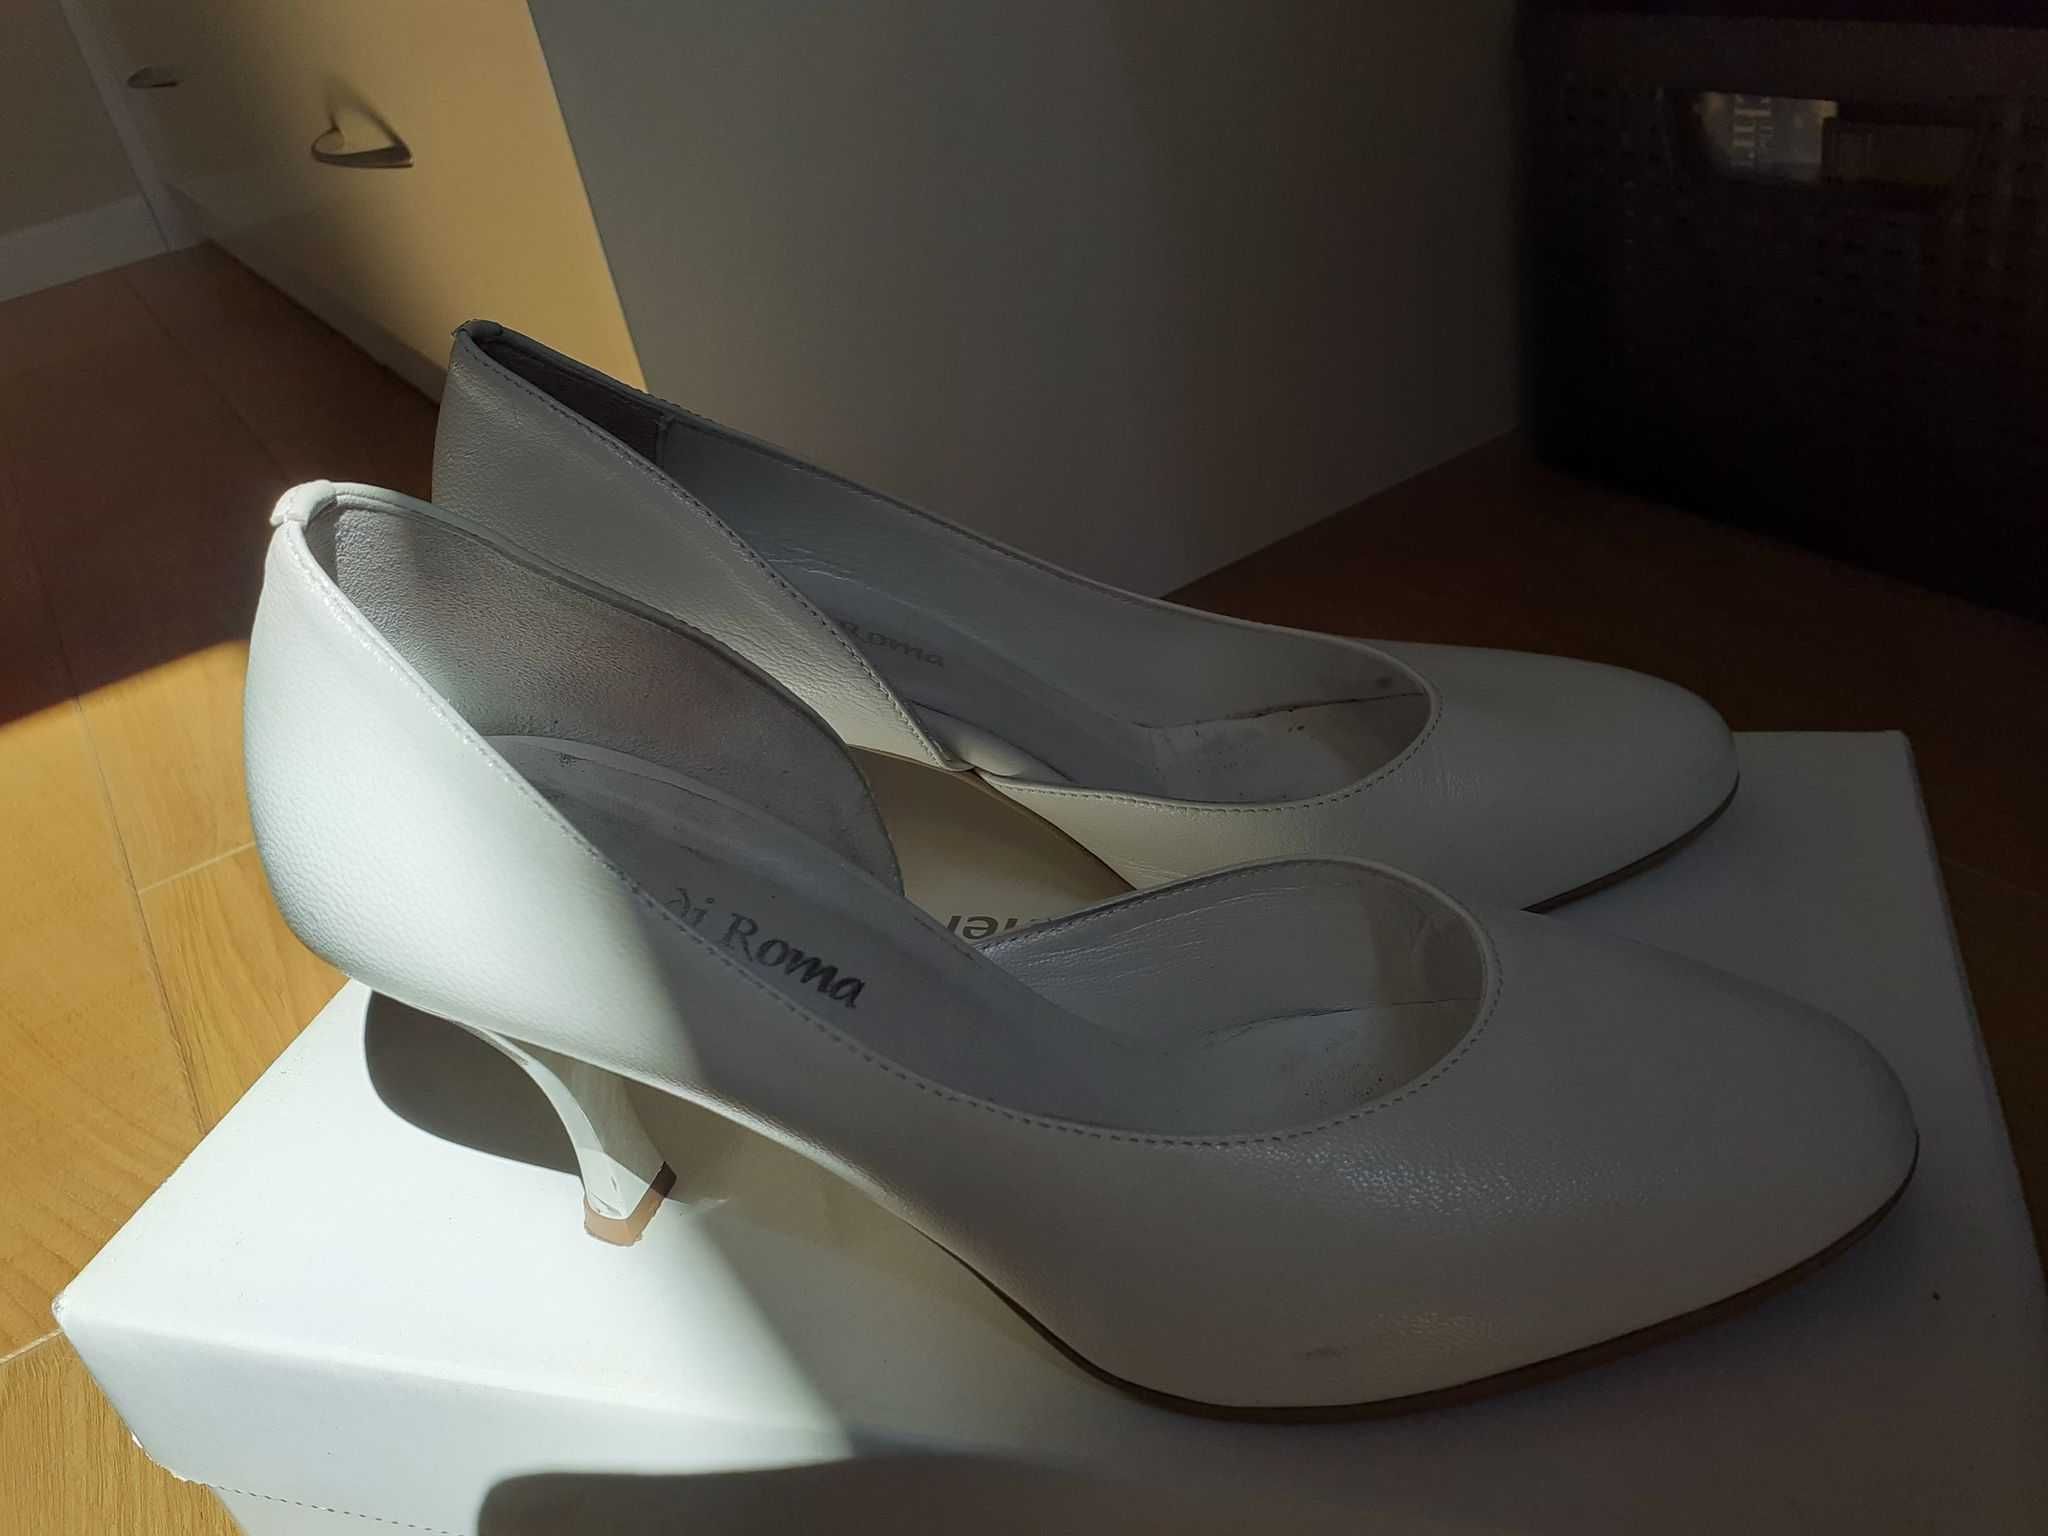 Ślubne buty skórzane firmy Arte Di Roma w rozmiarze 37